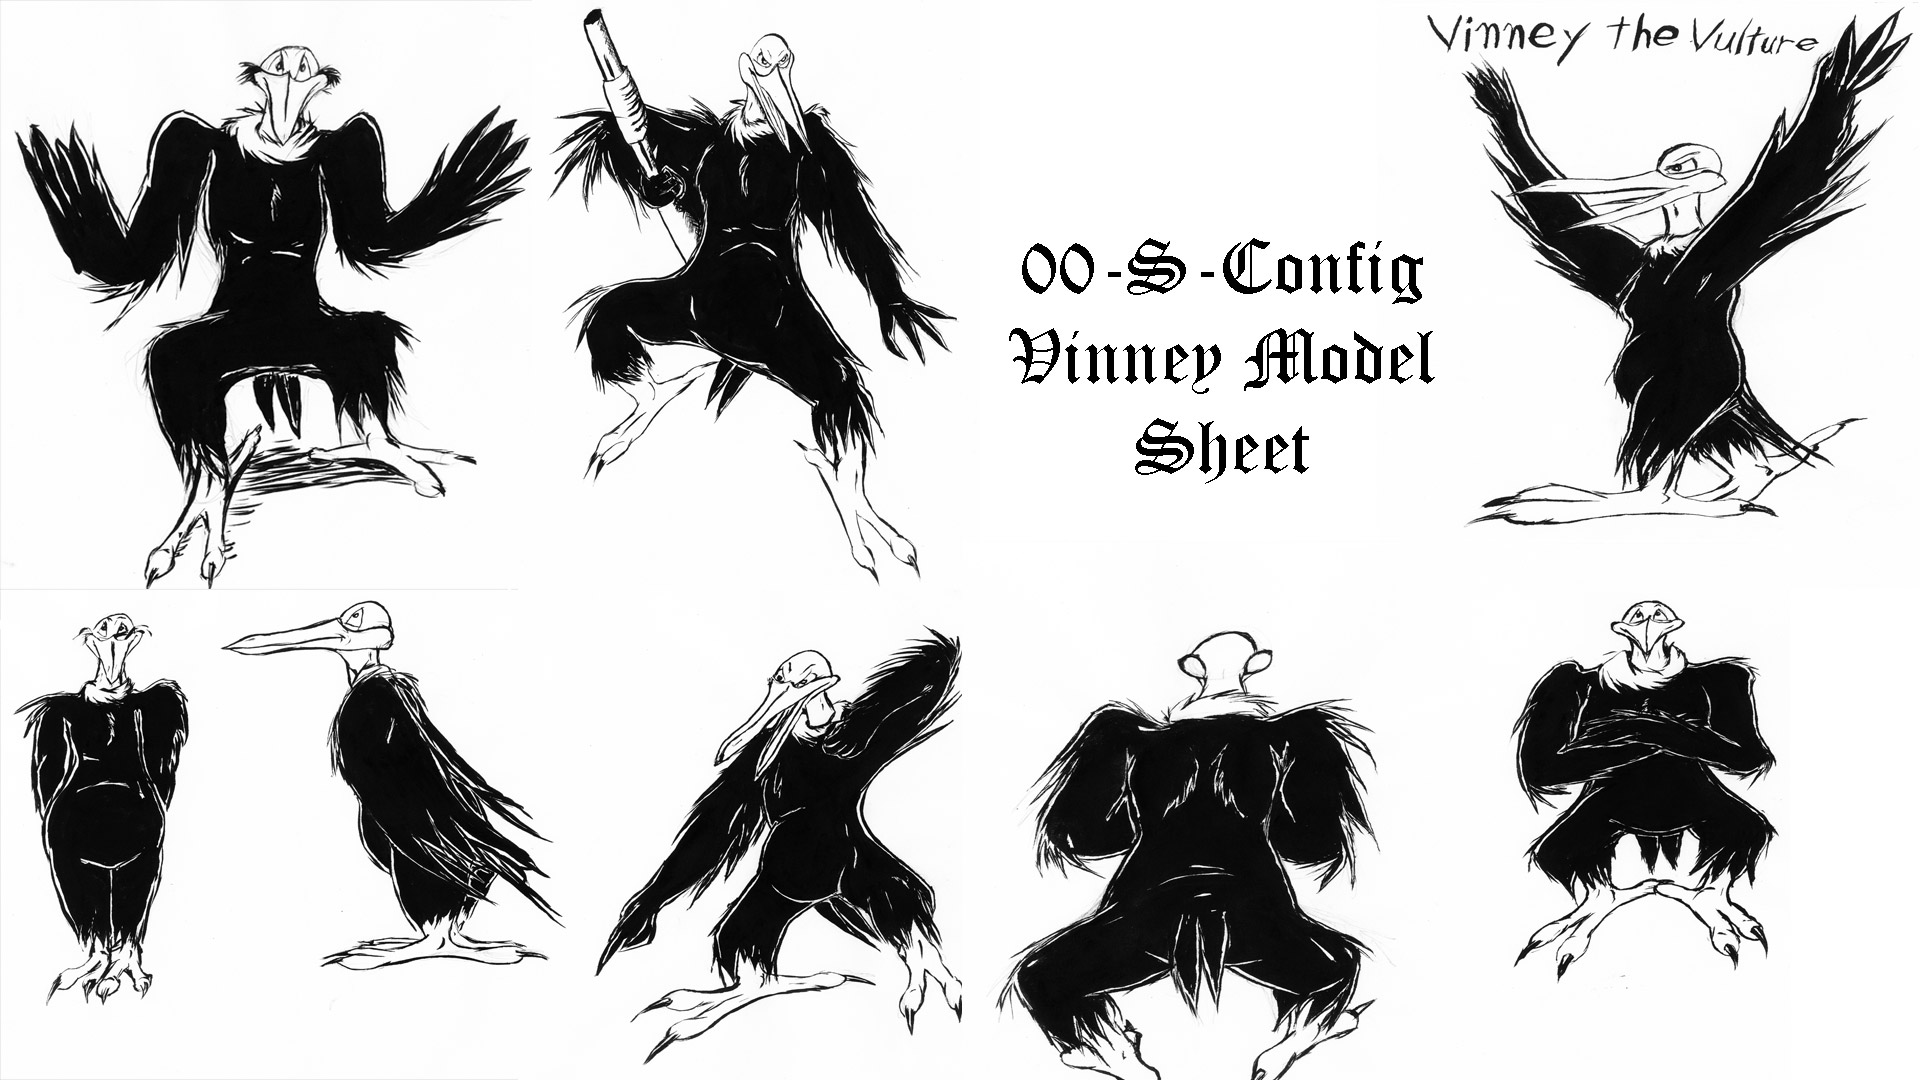 Vinney Vulture Ref Sheet